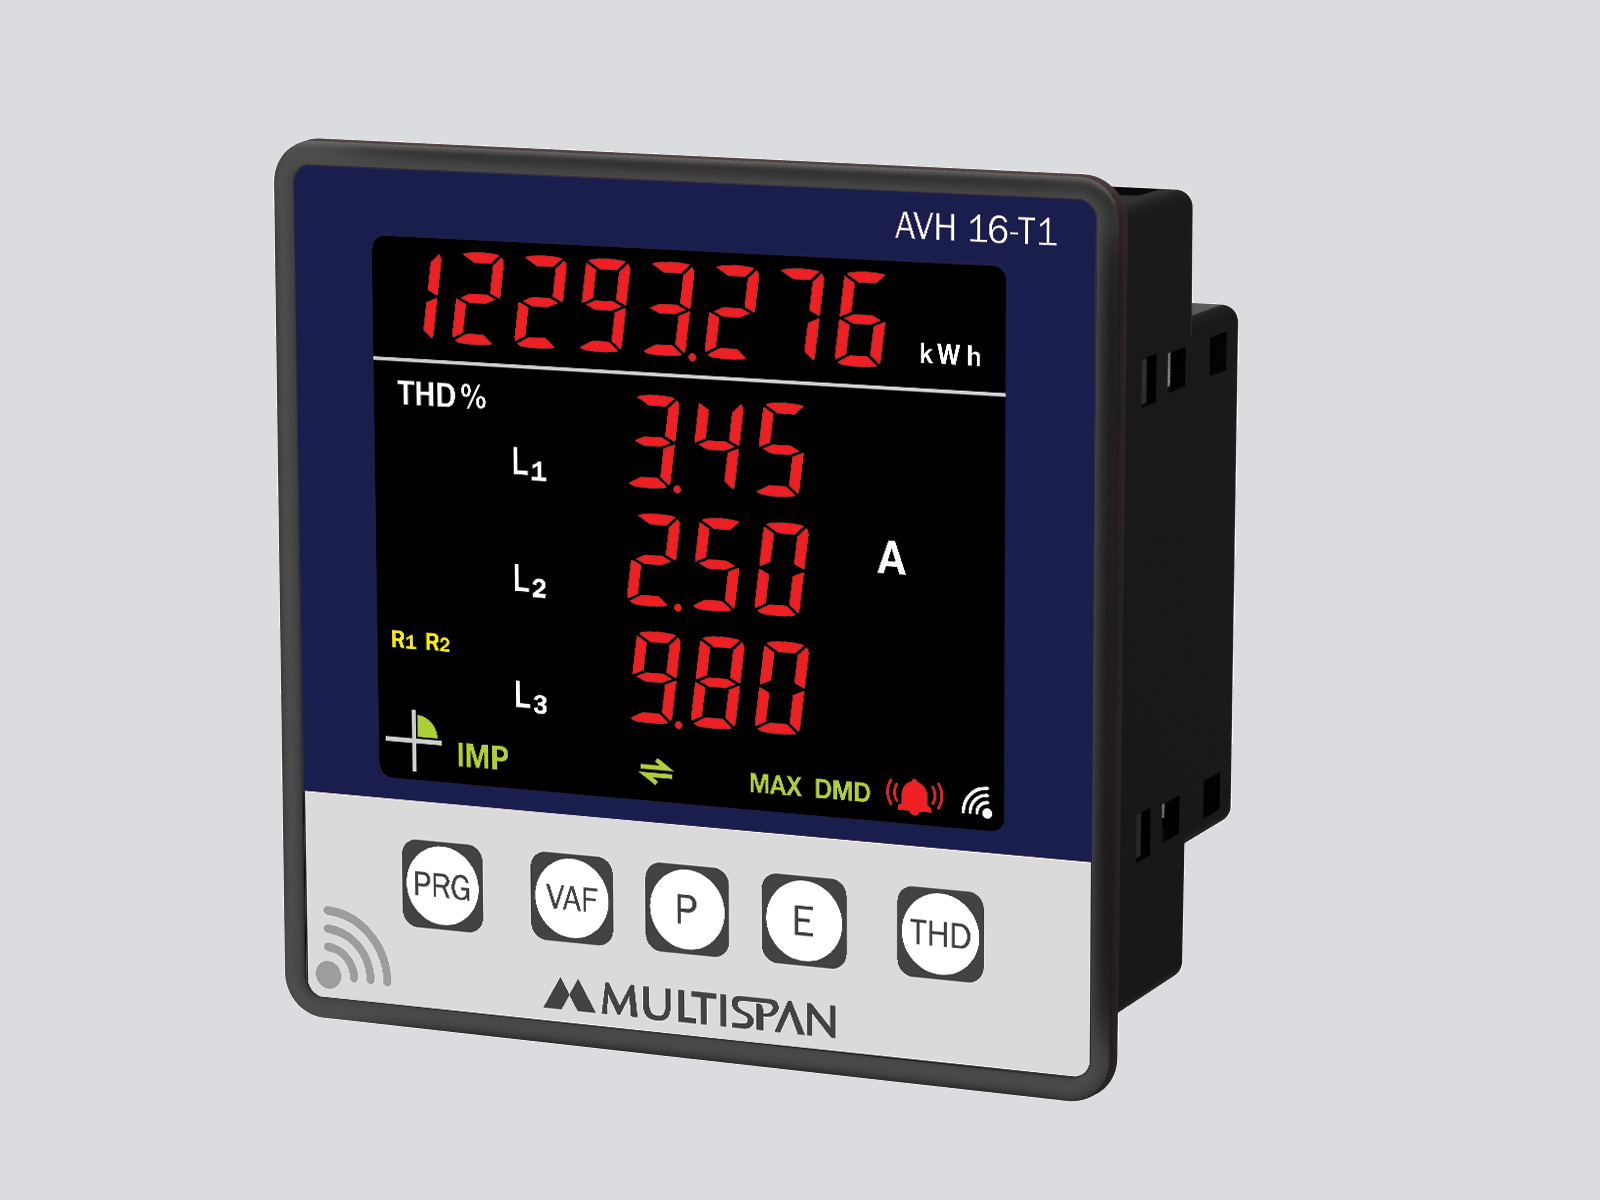 Energy Meter AVH14-T1